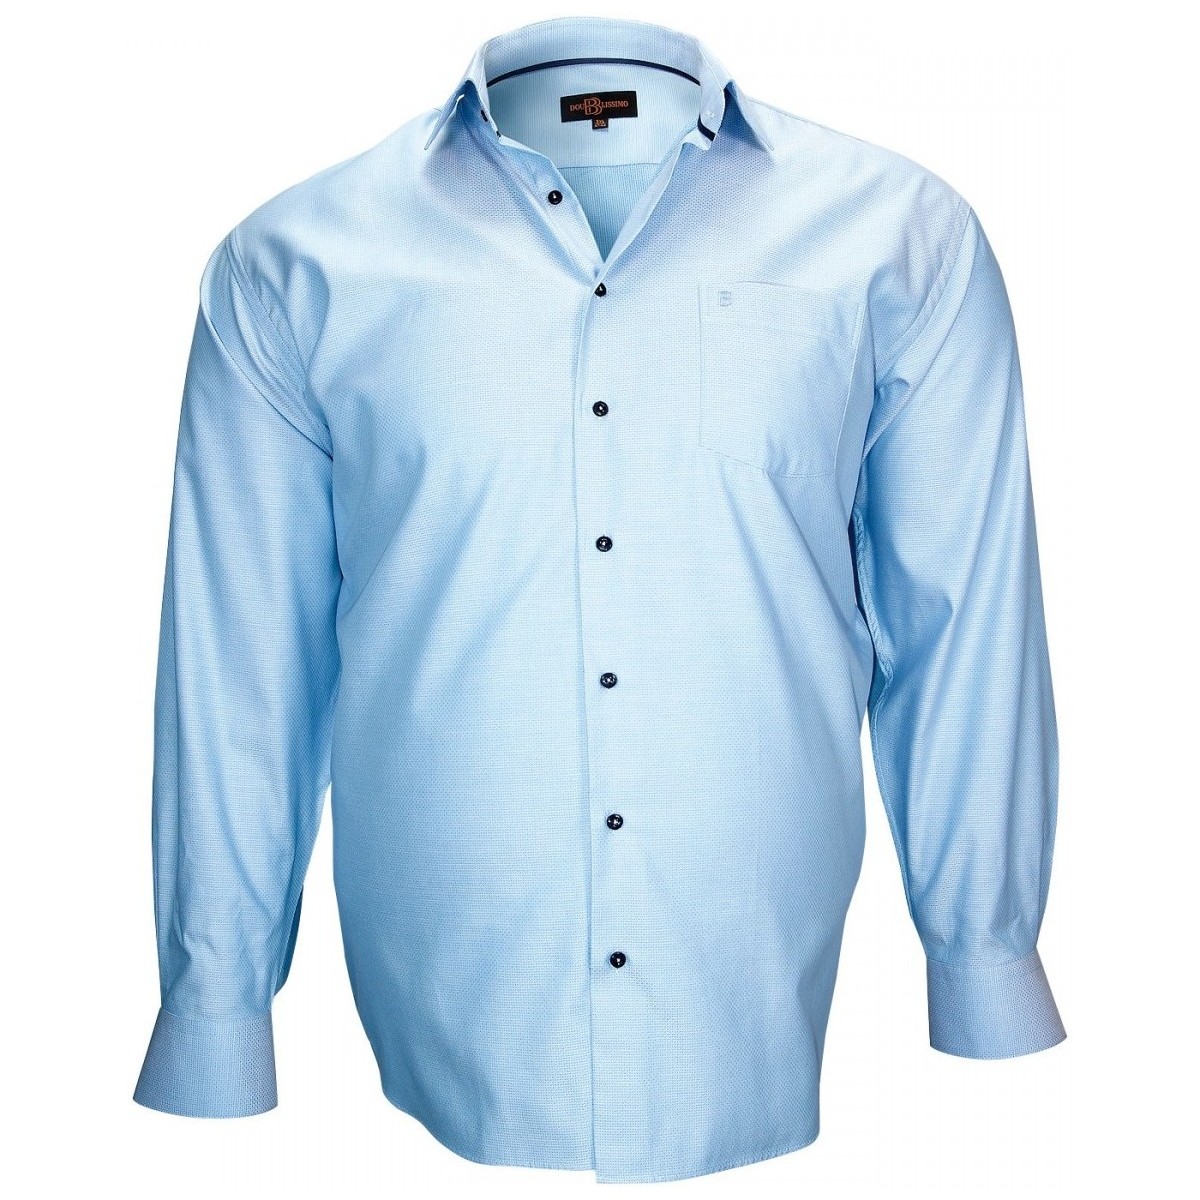 Vêtements Homme Chemises manches longues Doublissimo chemise tissu armure honfleur bleu Bleu